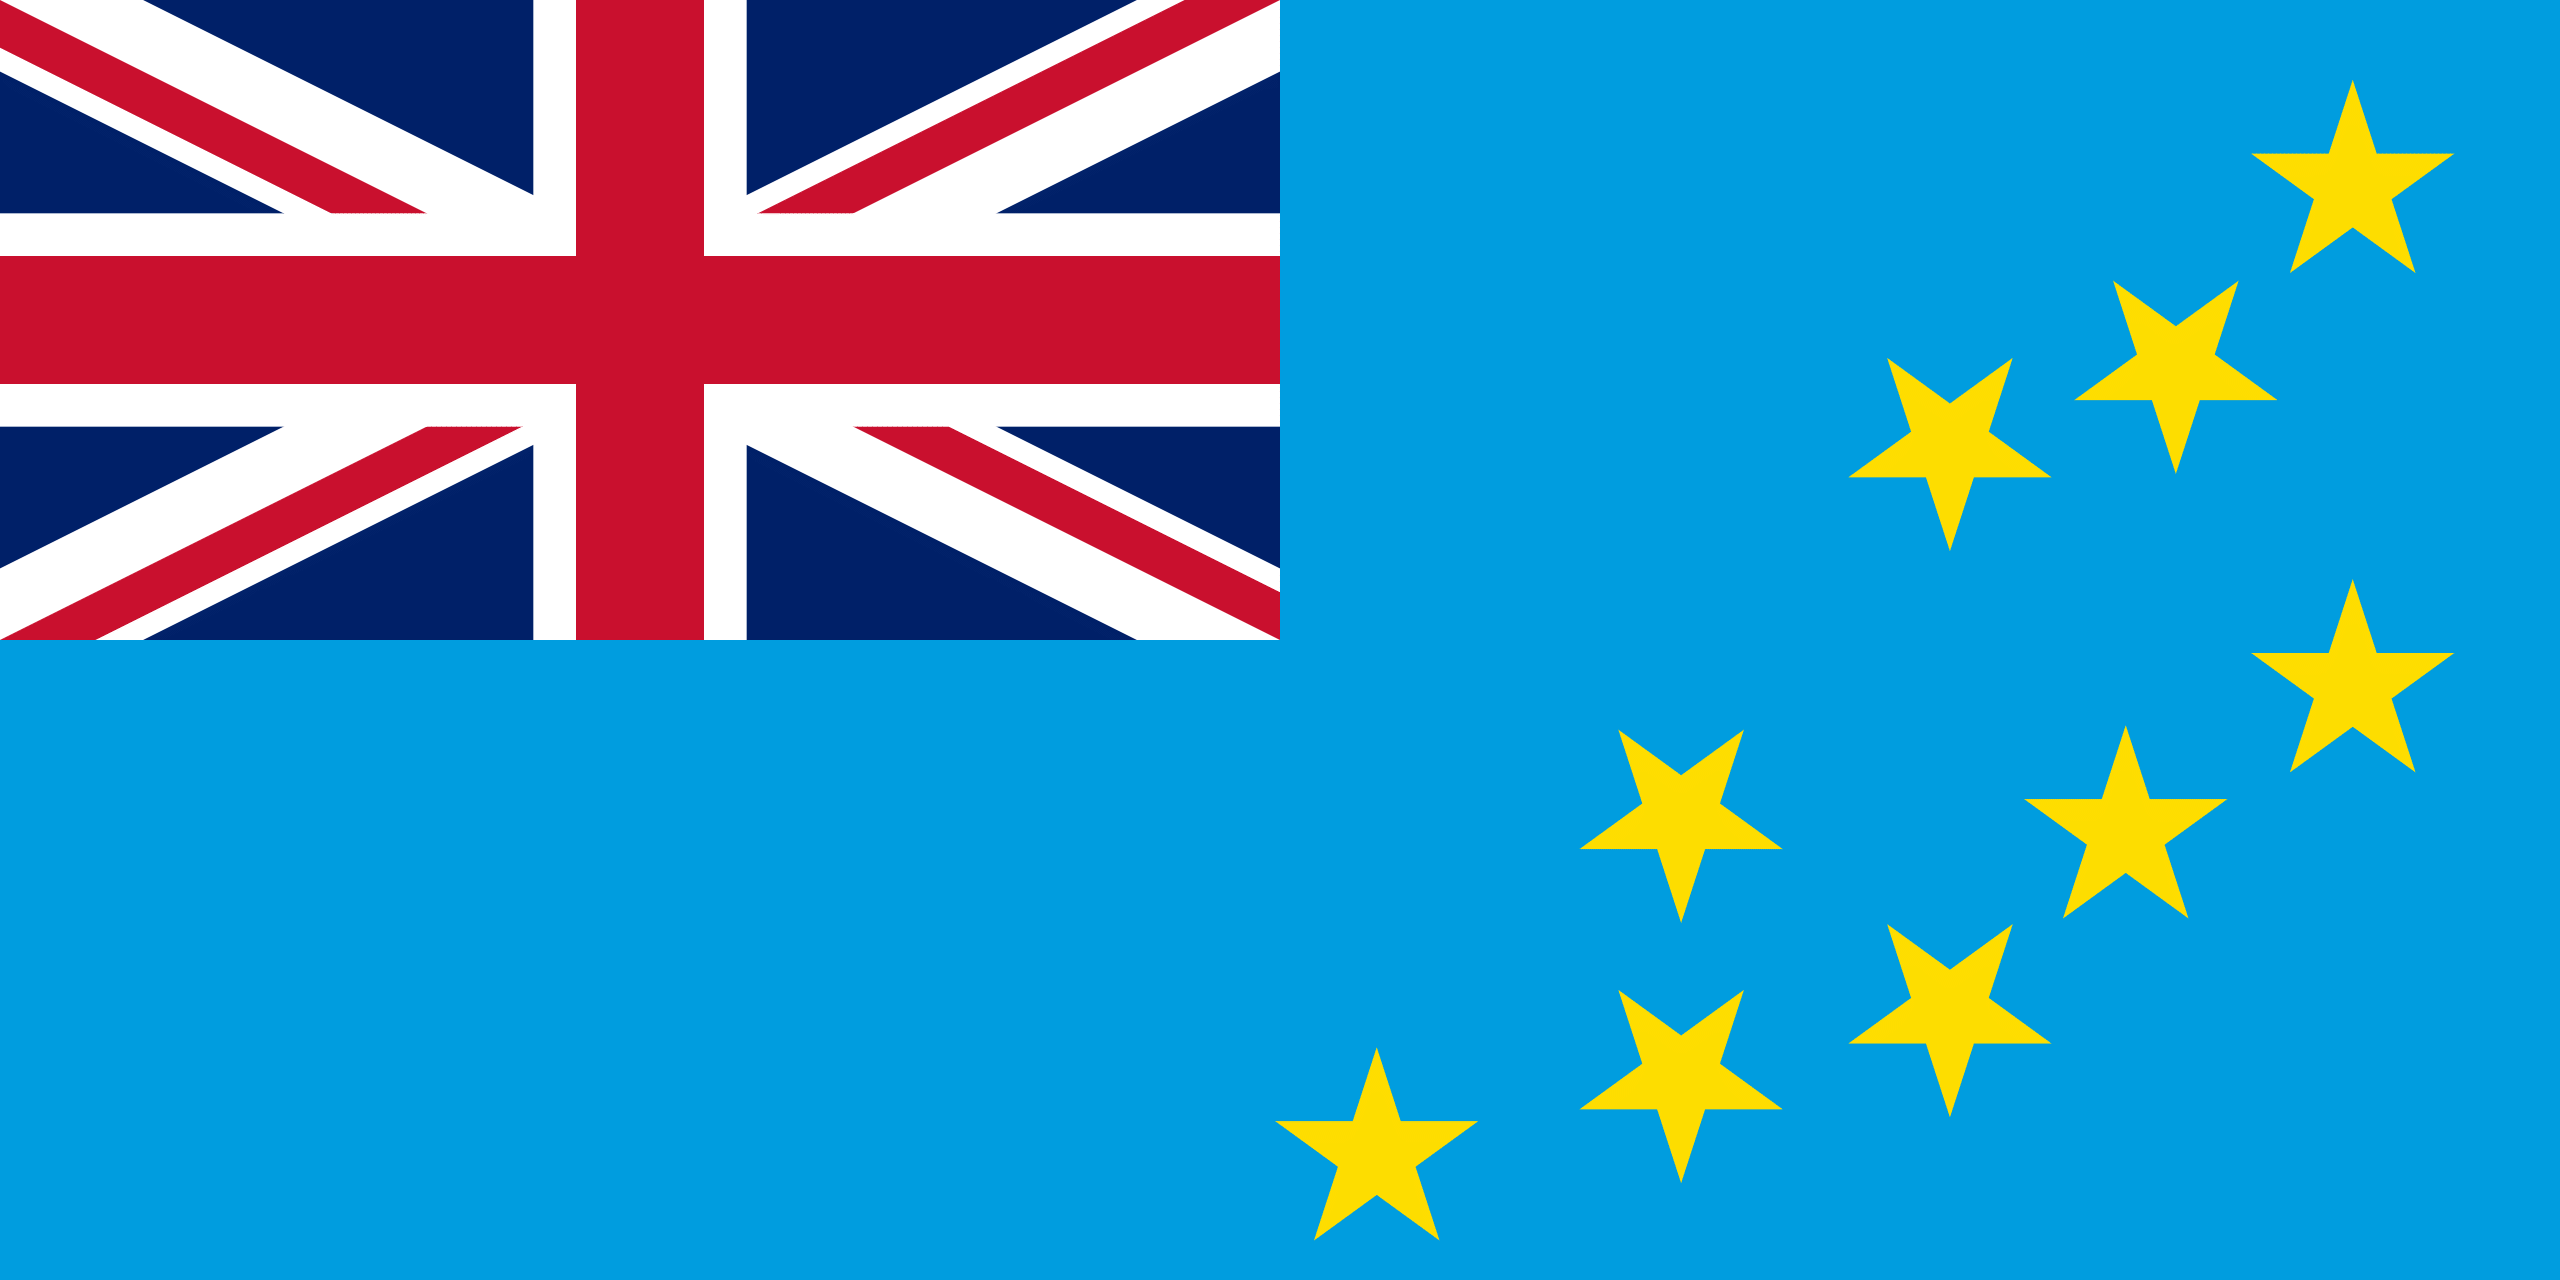 Tuvaluan Flag